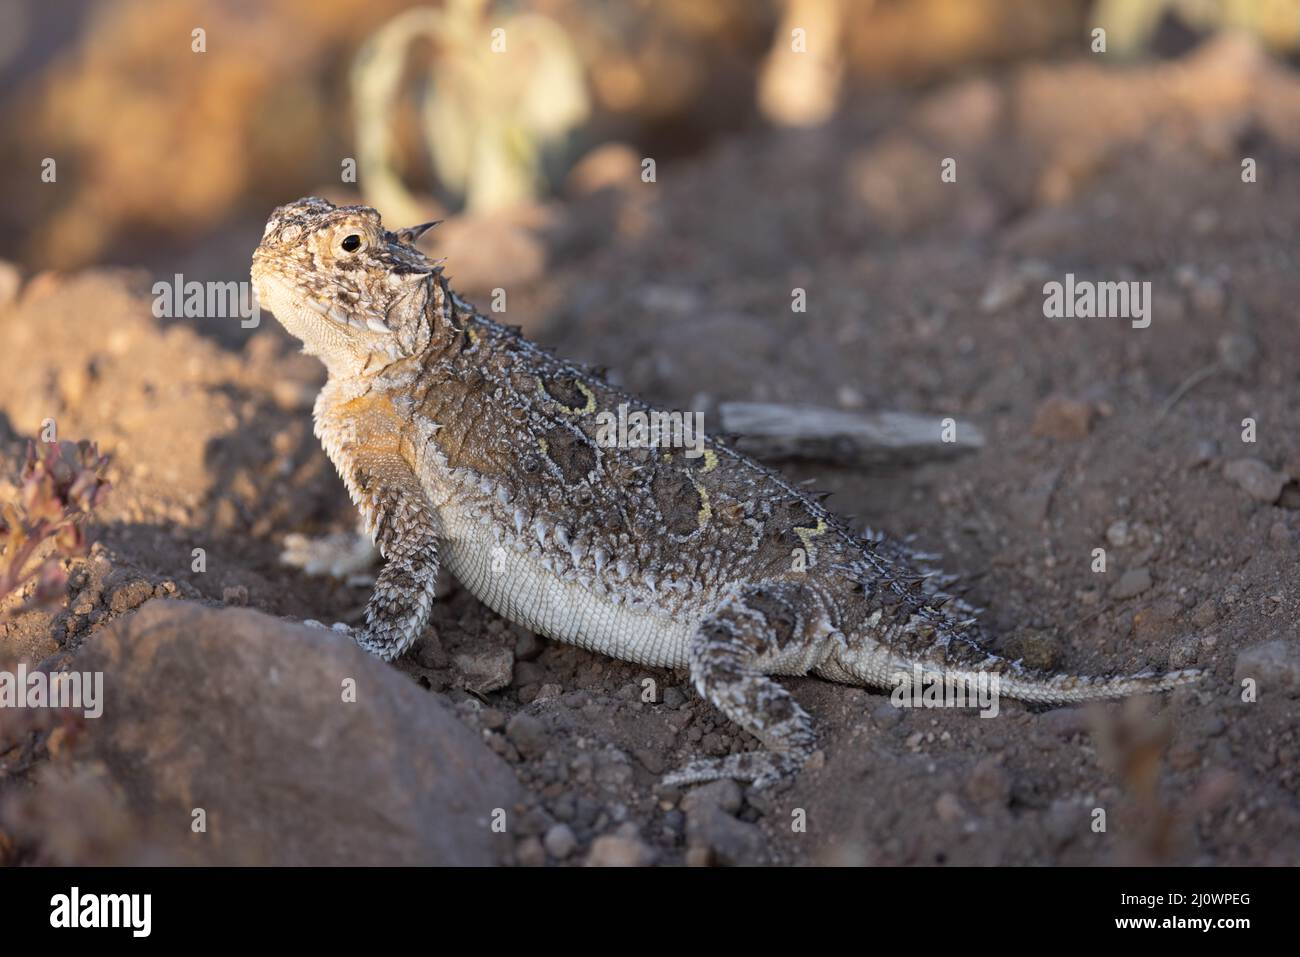 Texas Horned Lizard, Socorro, New Mexico, USA. Stock Photo